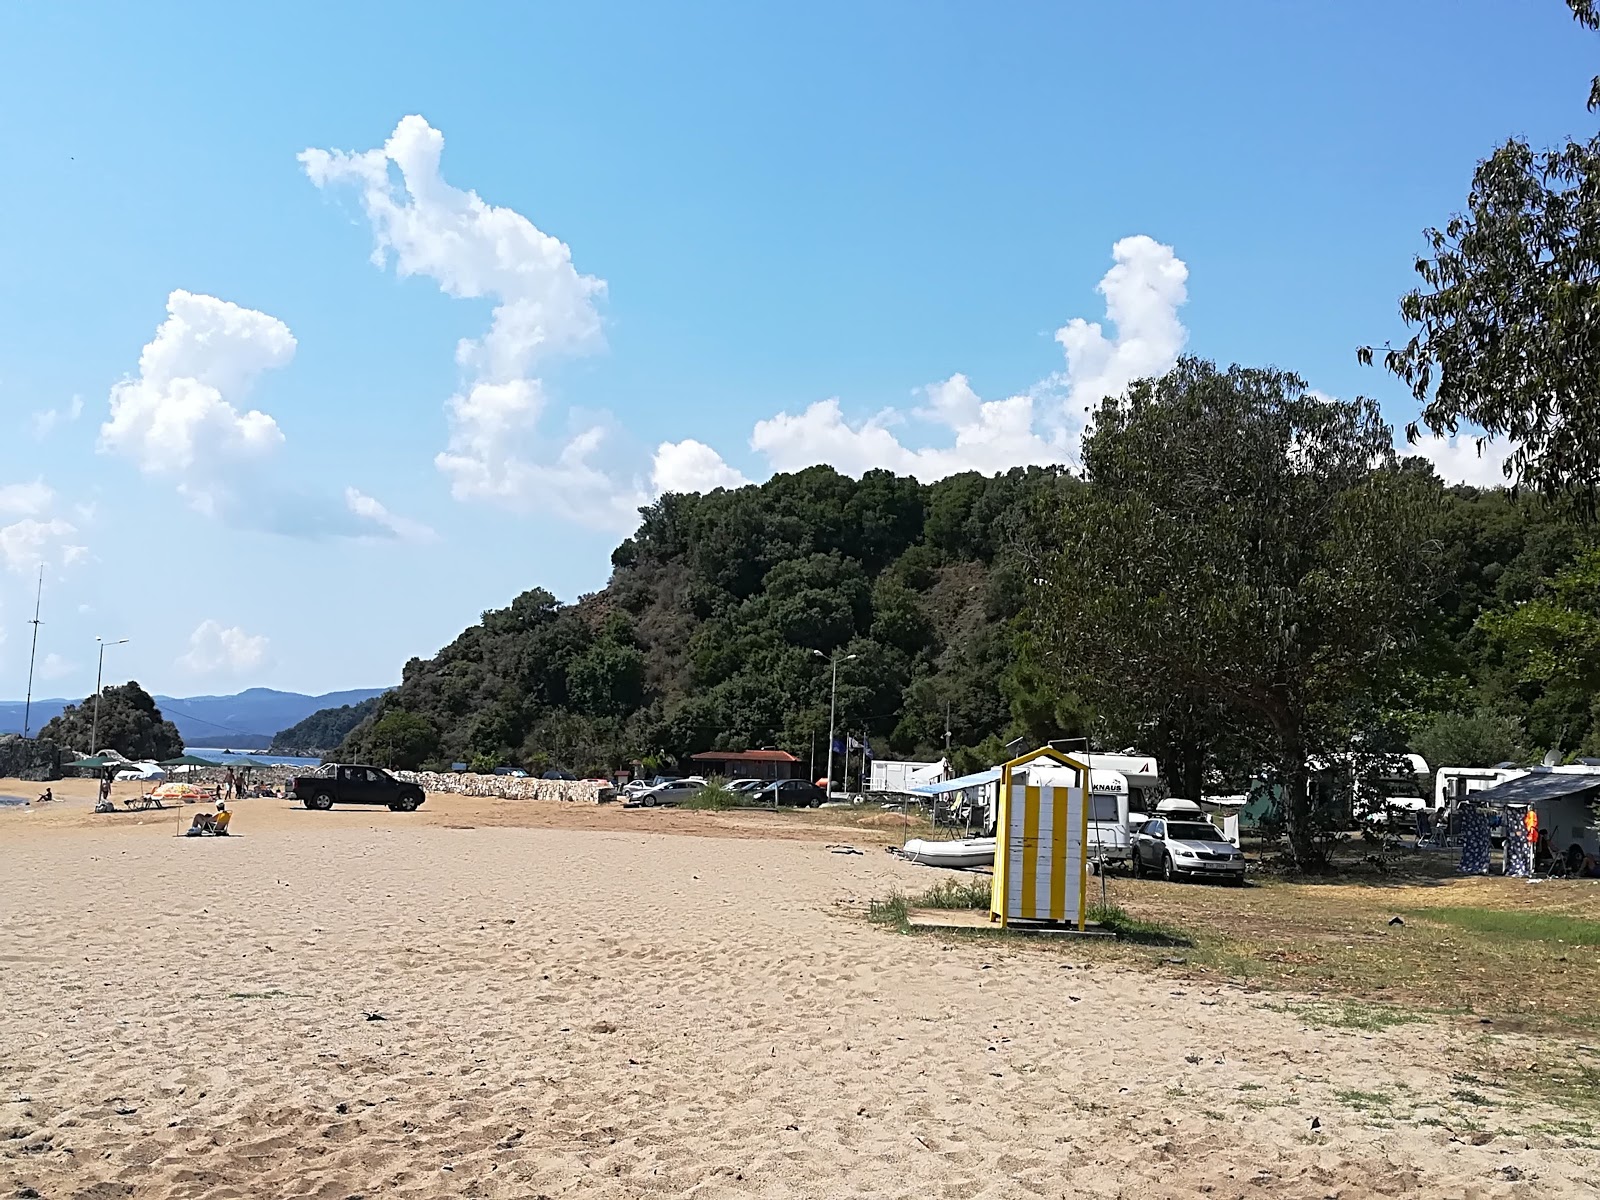 Zdjęcie Stratoni beach - popularne miejsce wśród znawców relaksu